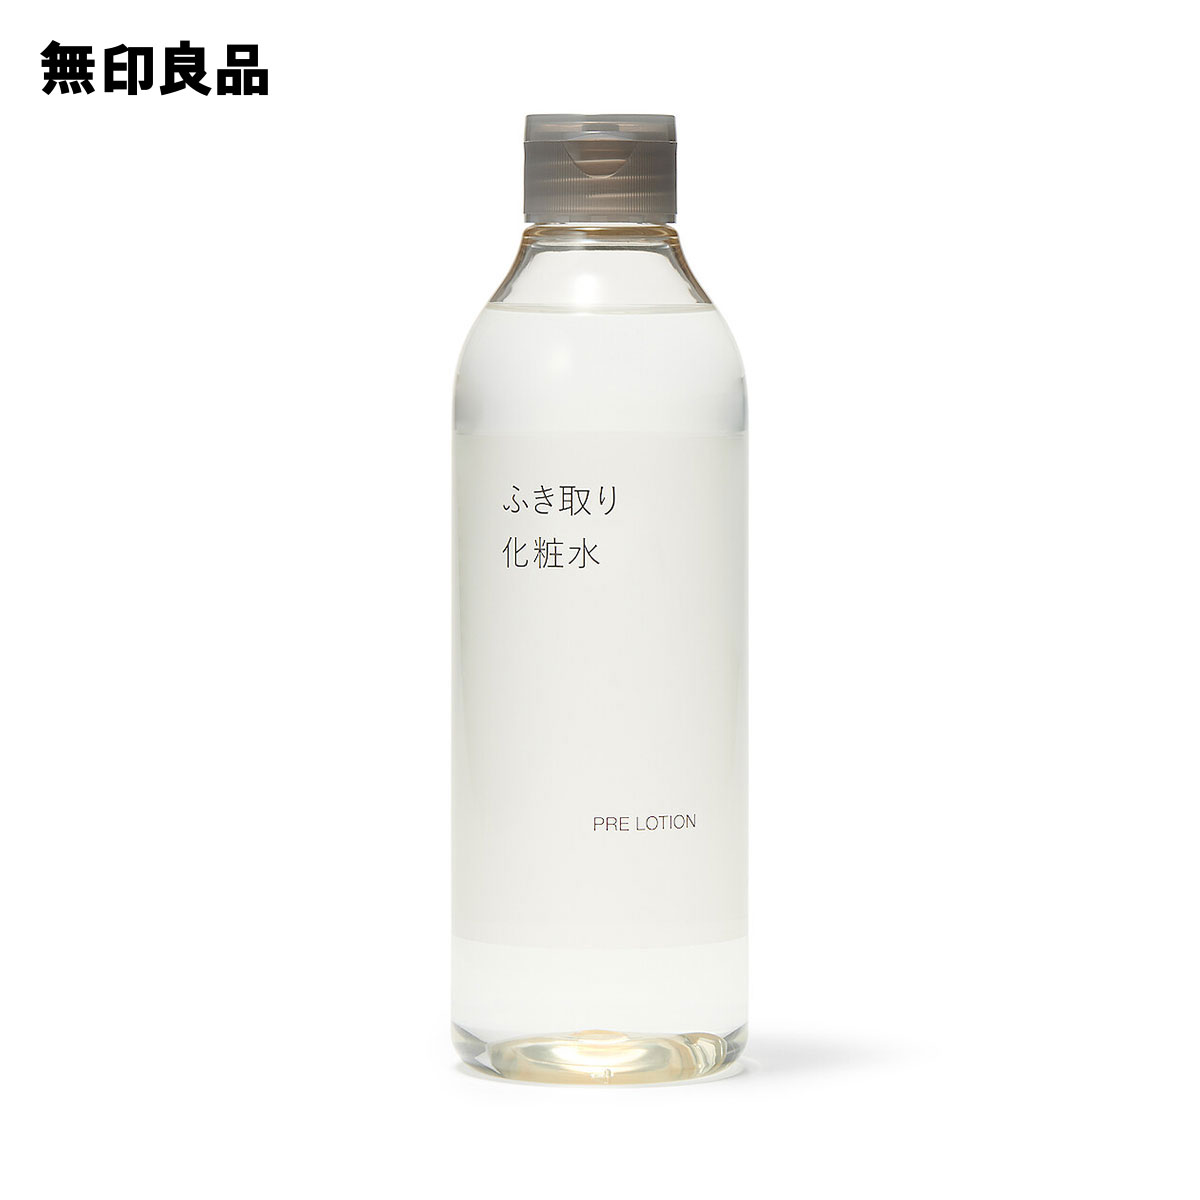 無印良品 化粧水 【無印良品 公式】ふき取り化粧水・300mL